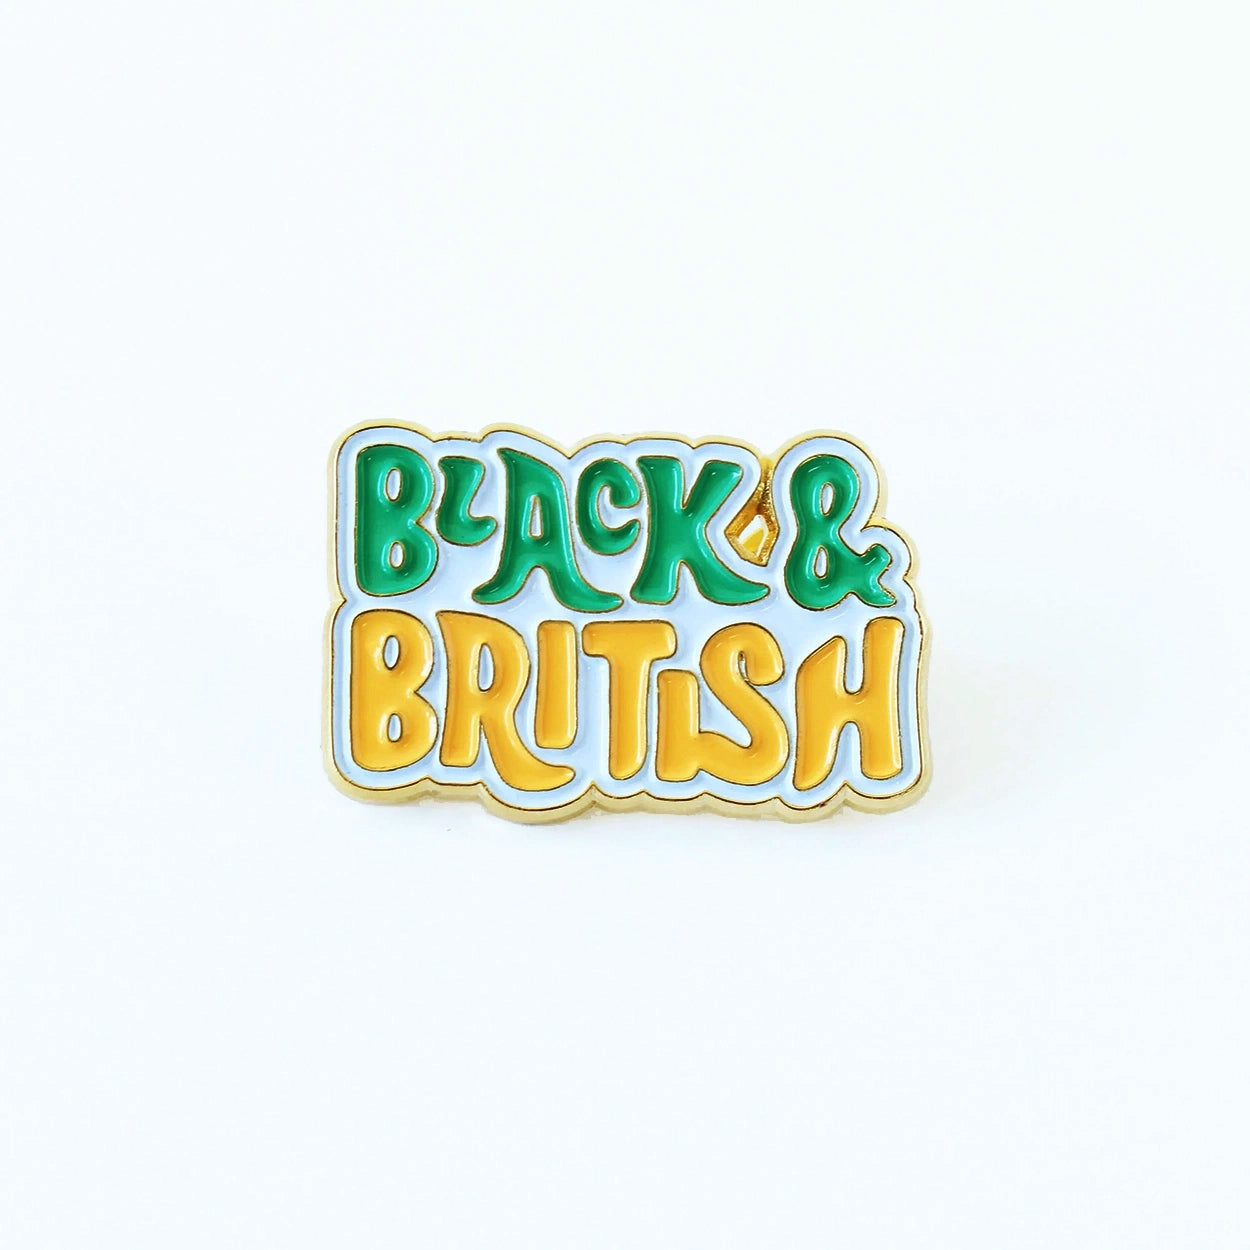 Black and British Pin